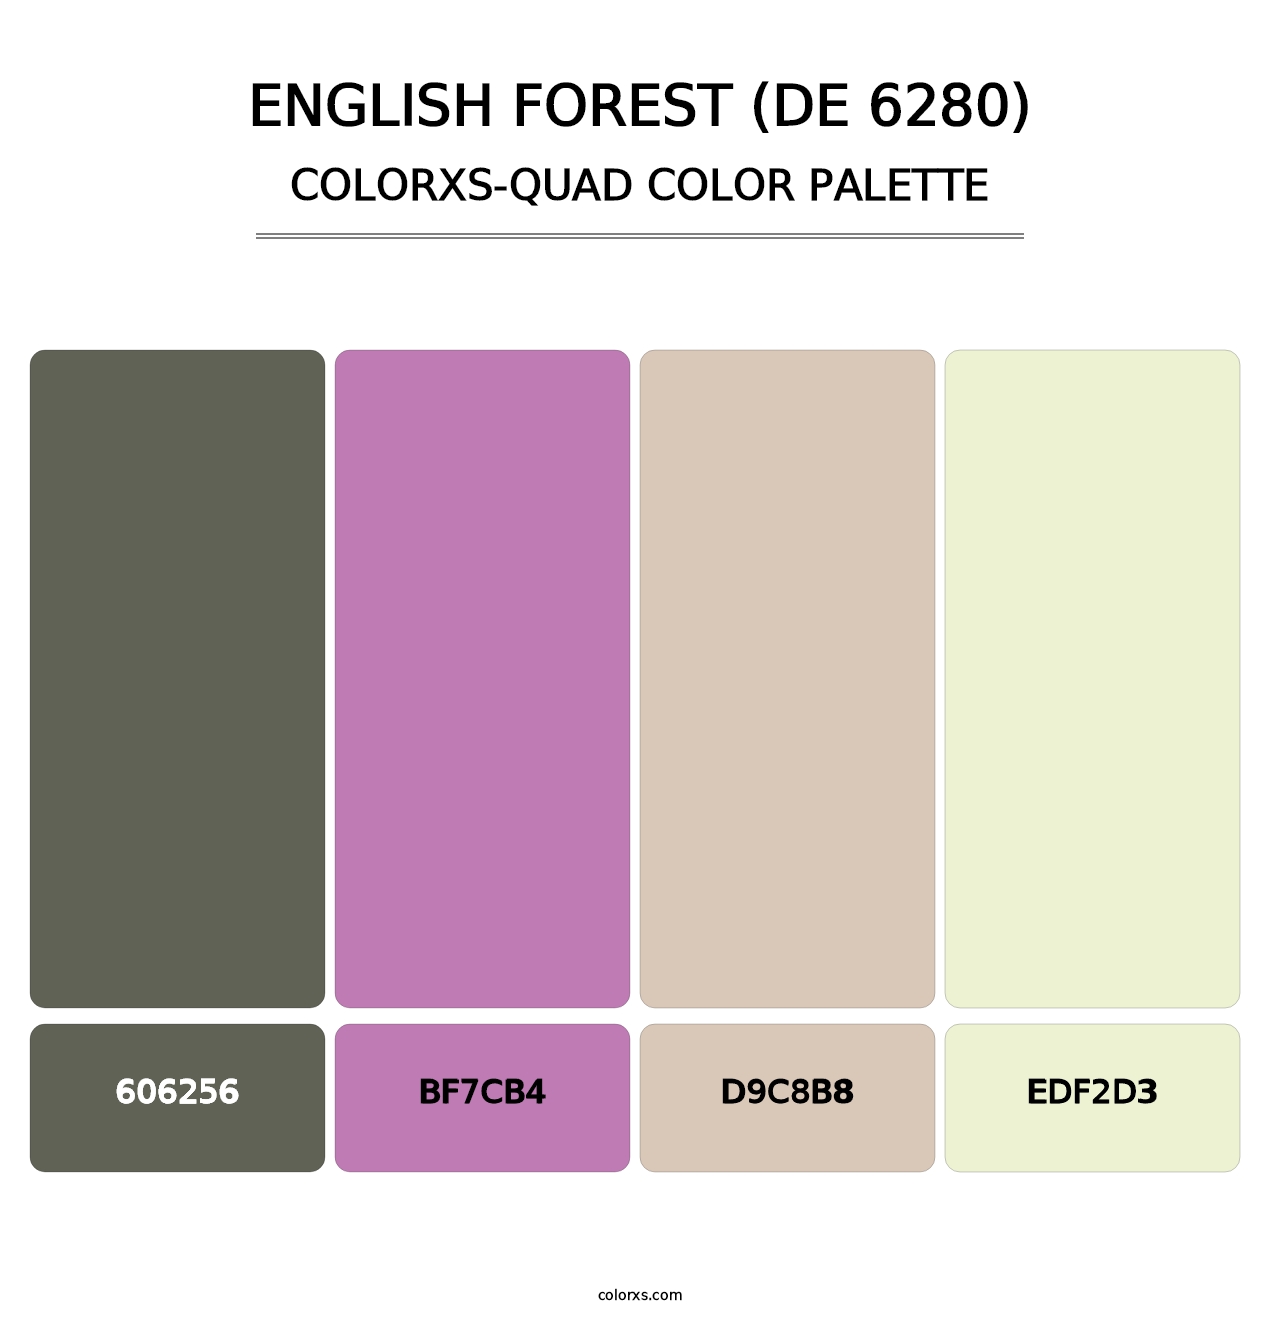 English Forest (DE 6280) - Colorxs Quad Palette